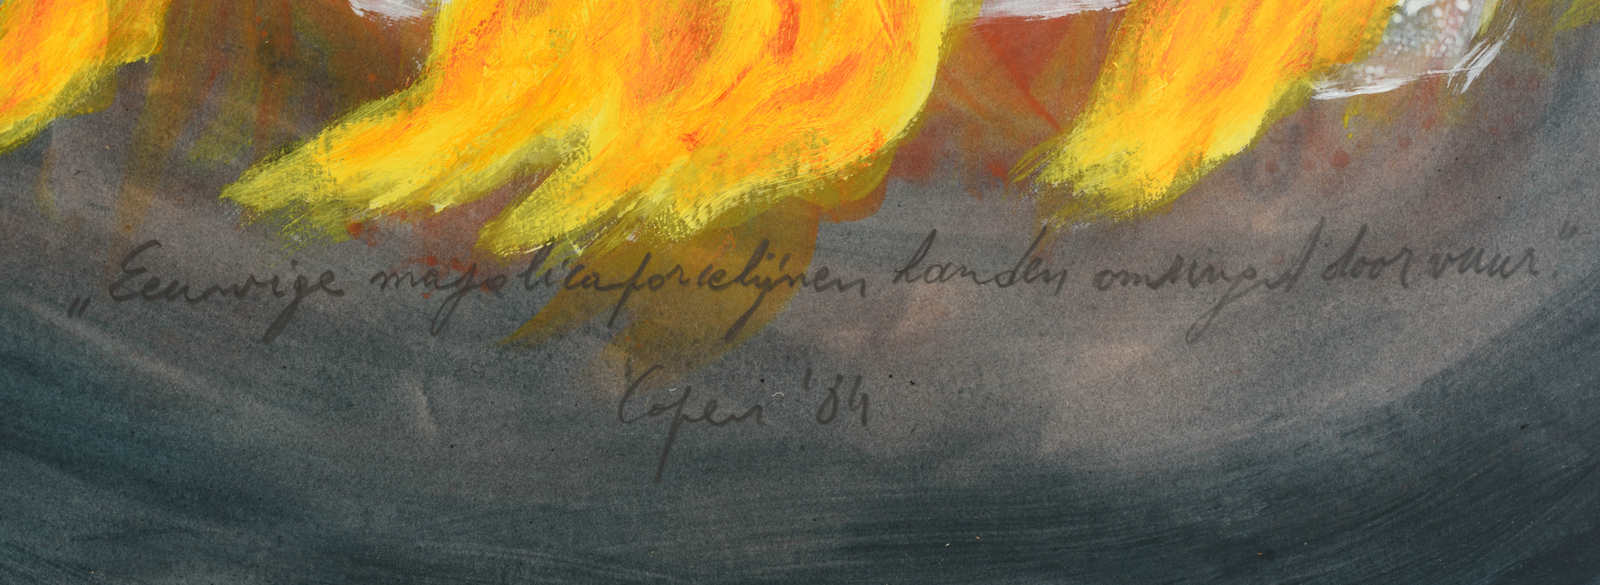 Copers L., 'Eeuwige moljolicaporcelijnen handen omringd door vuur', dated (19)84, photography, water - Image 4 of 5